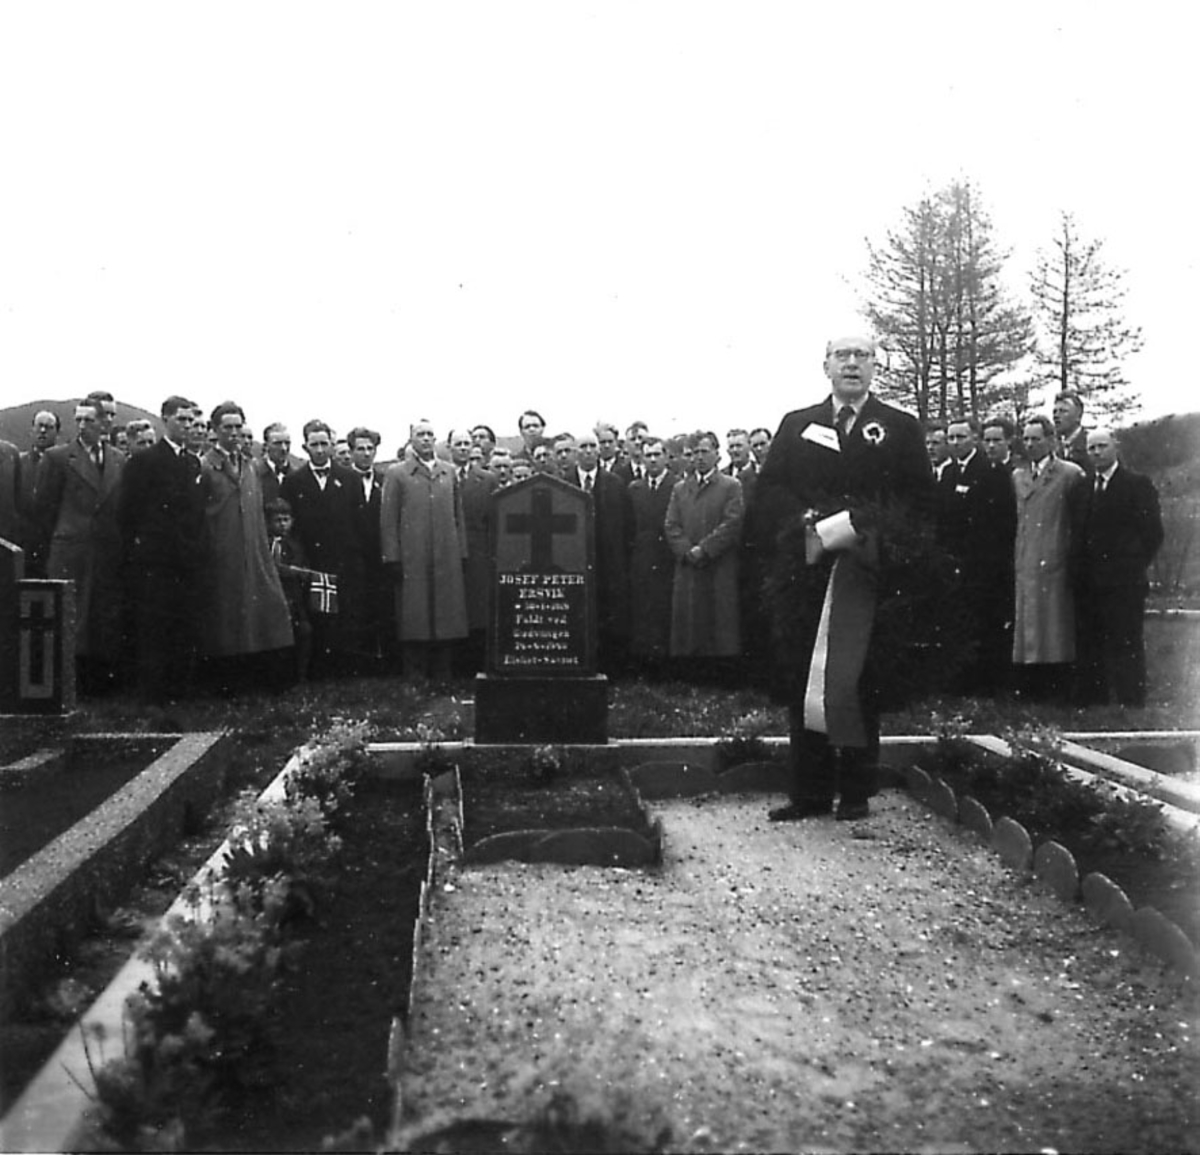 Frigjøringsdagene i Bodø etter krigen 1940 - 1945. Minnestund ved graven til Josef Peter Ersvik. Mange personer, En foran med krans.